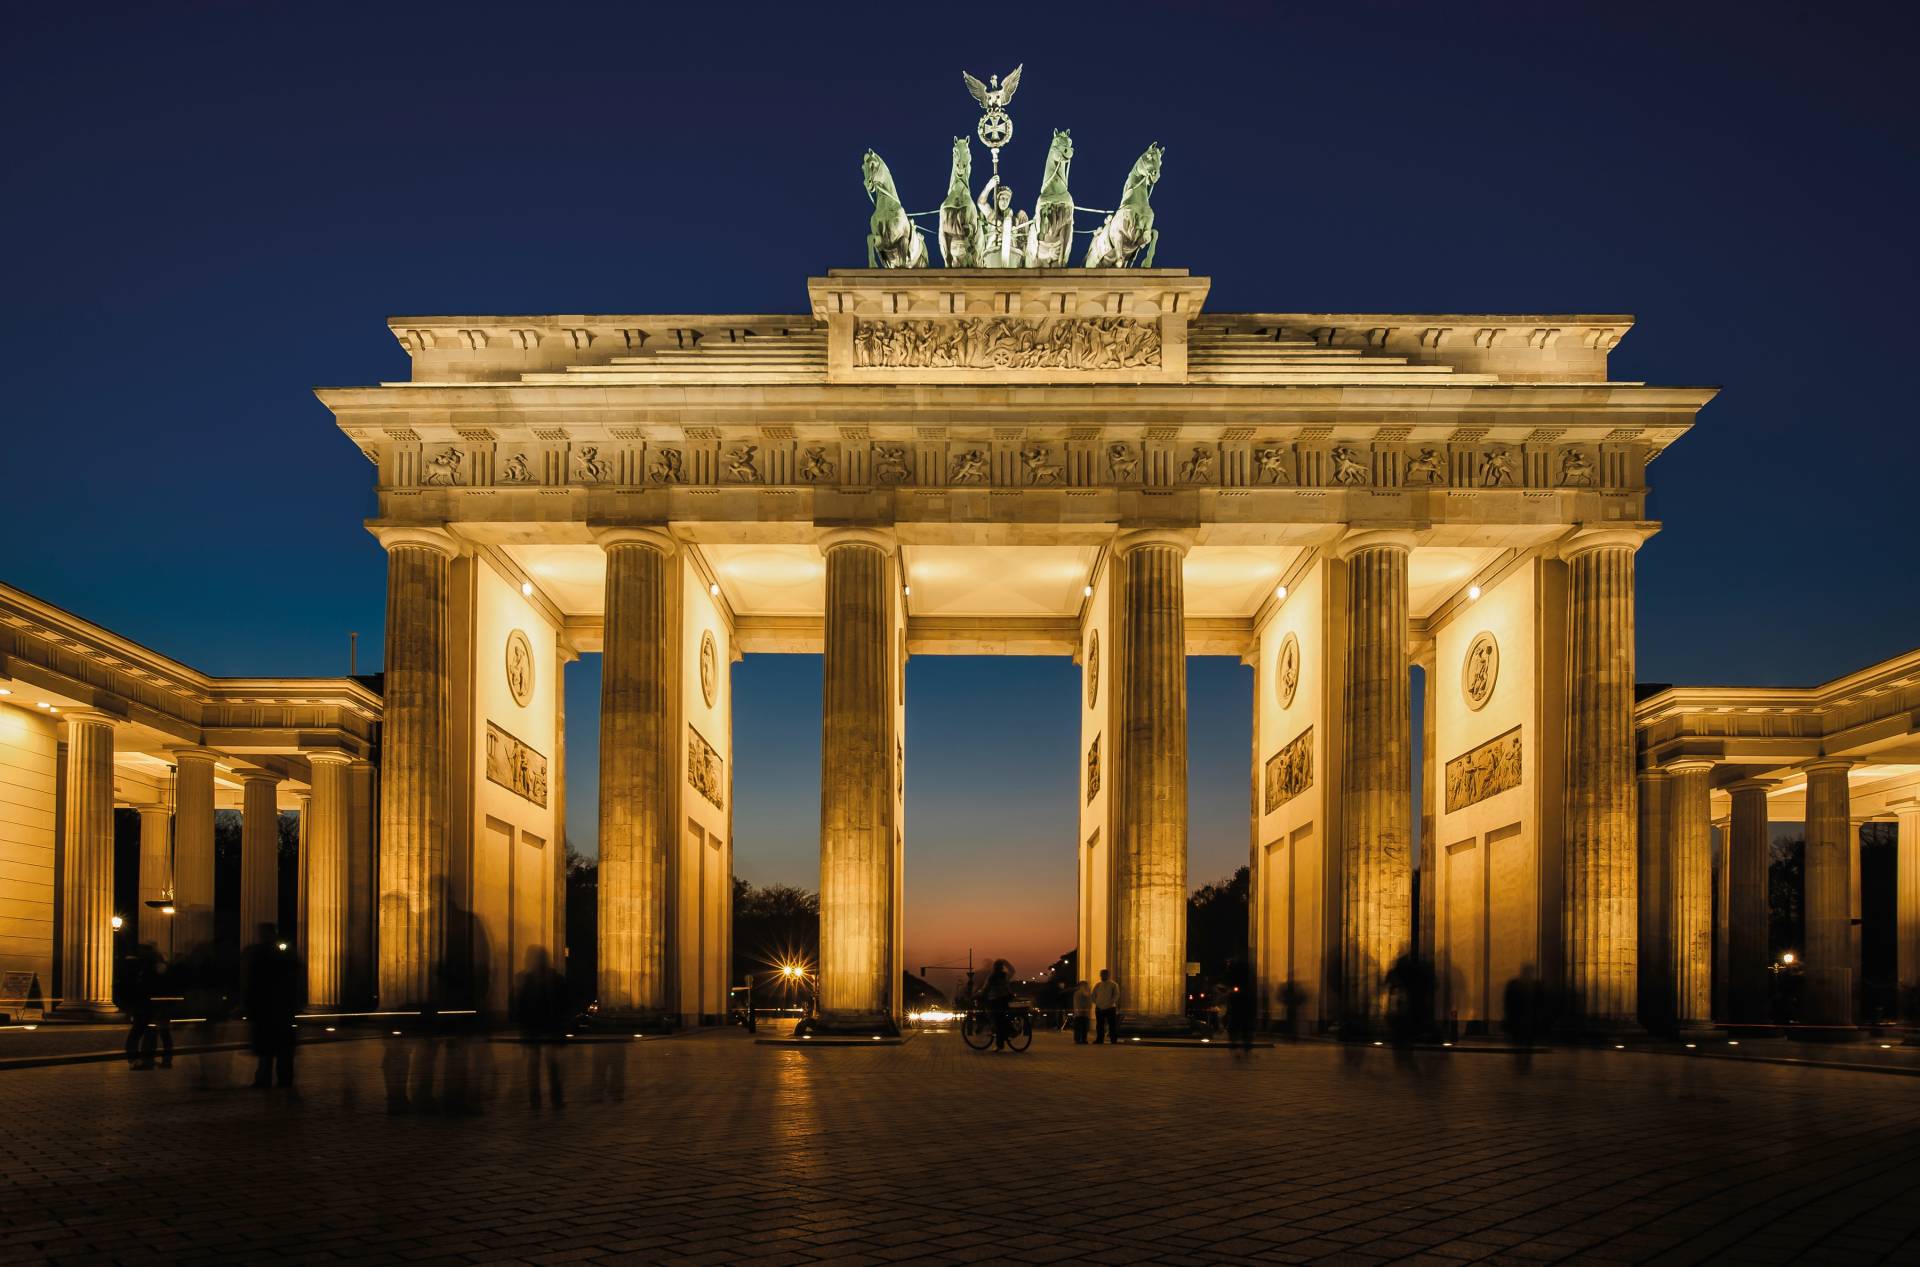 Papermoon Fototapete "Brandenburg Gate" von Papermoon